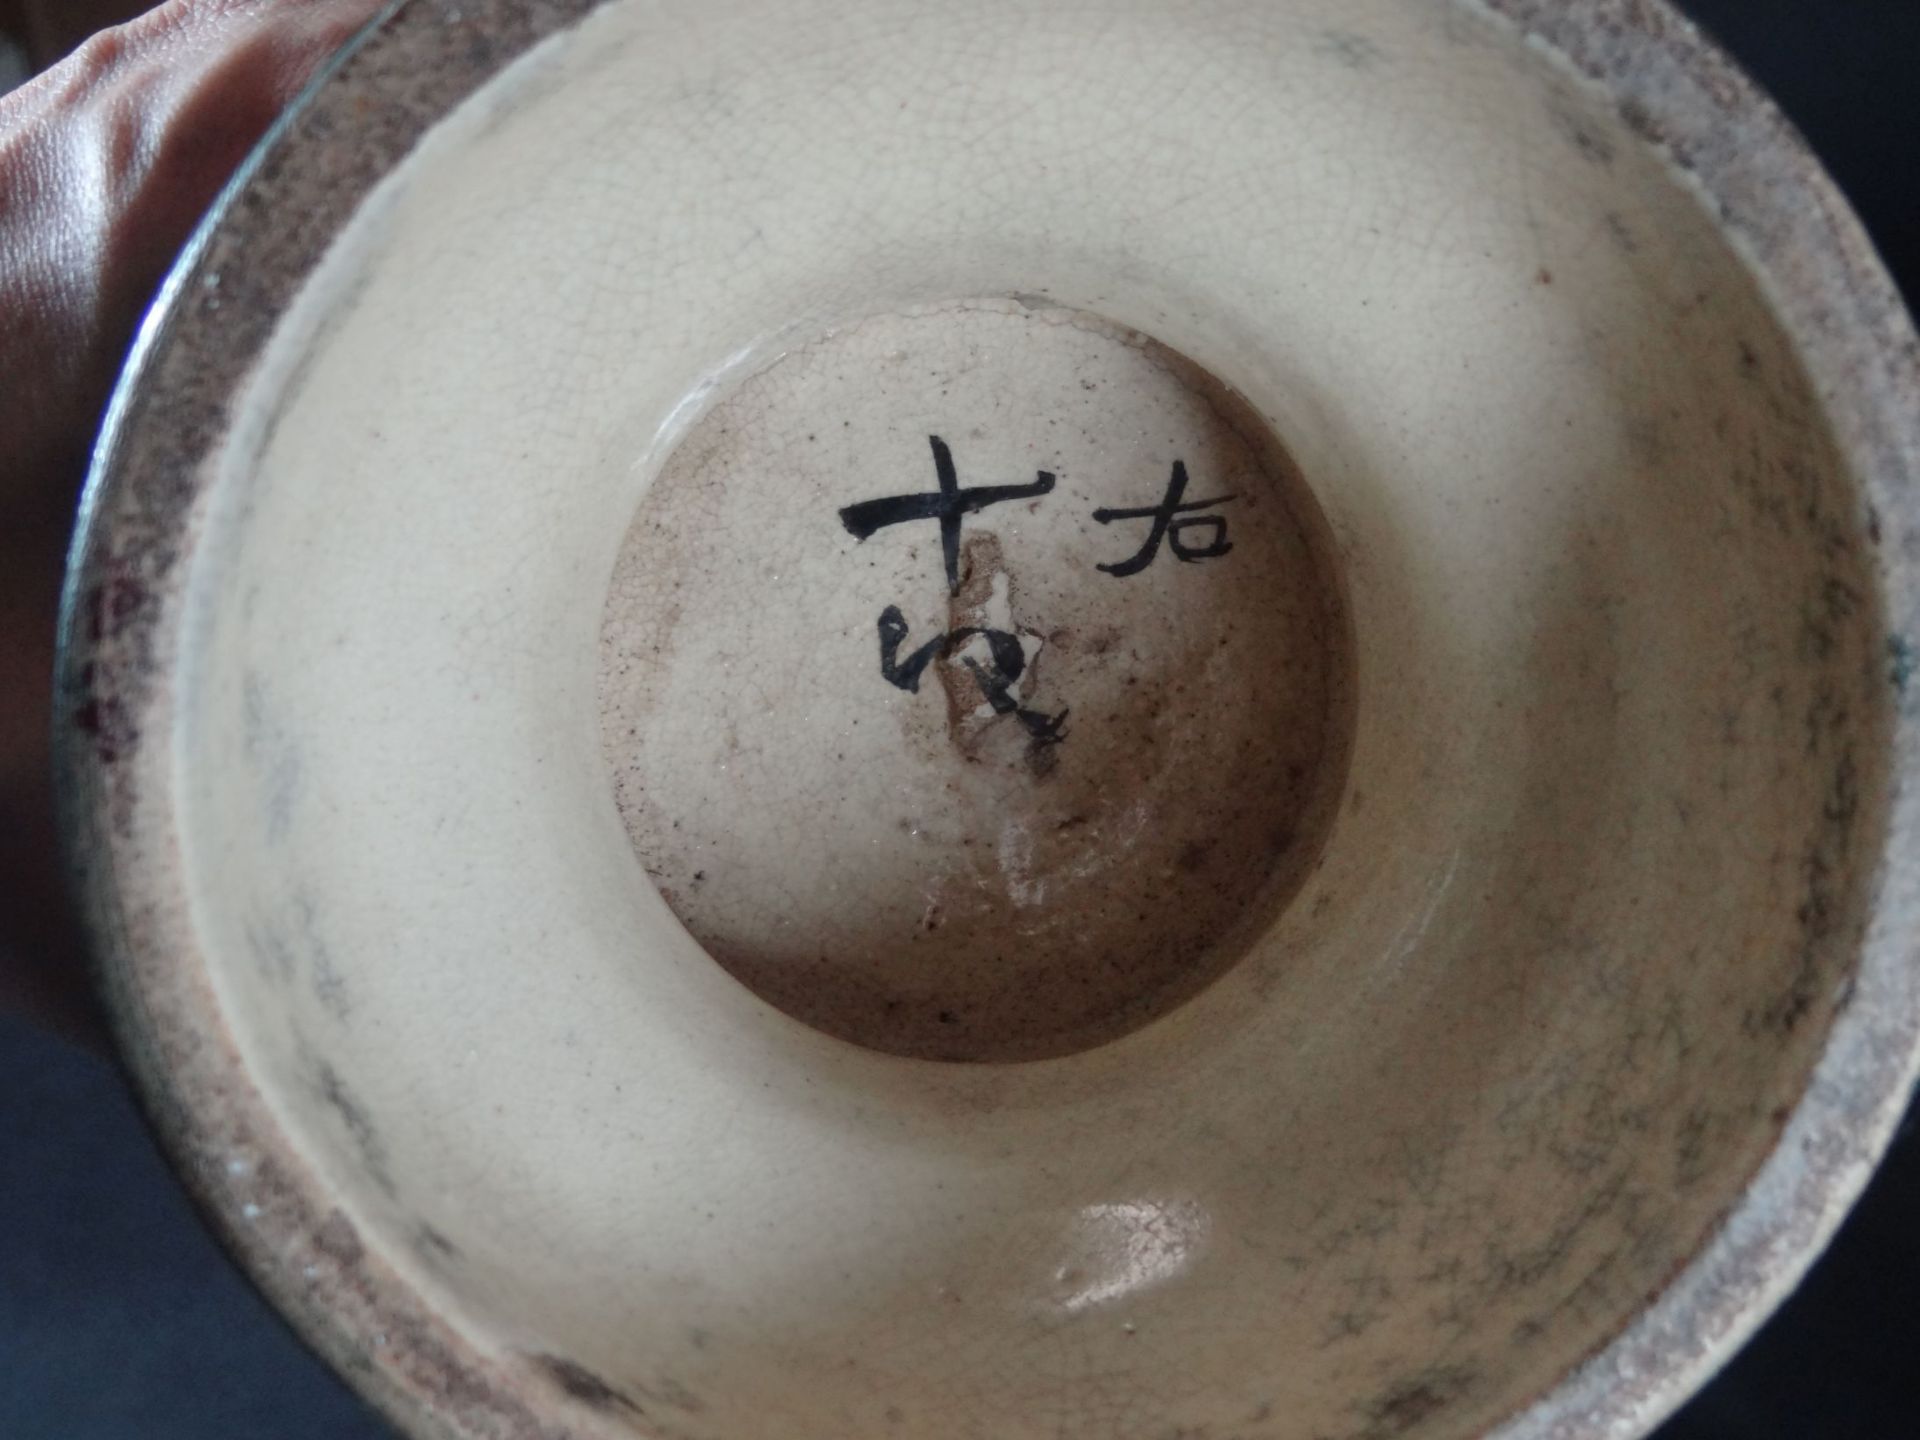 grosse China-Vase, Emaillemalerei, wohl um 1920?, H-45 cm, im Boden Schriftzeichen,- - -22.61 % - Bild 7 aus 7